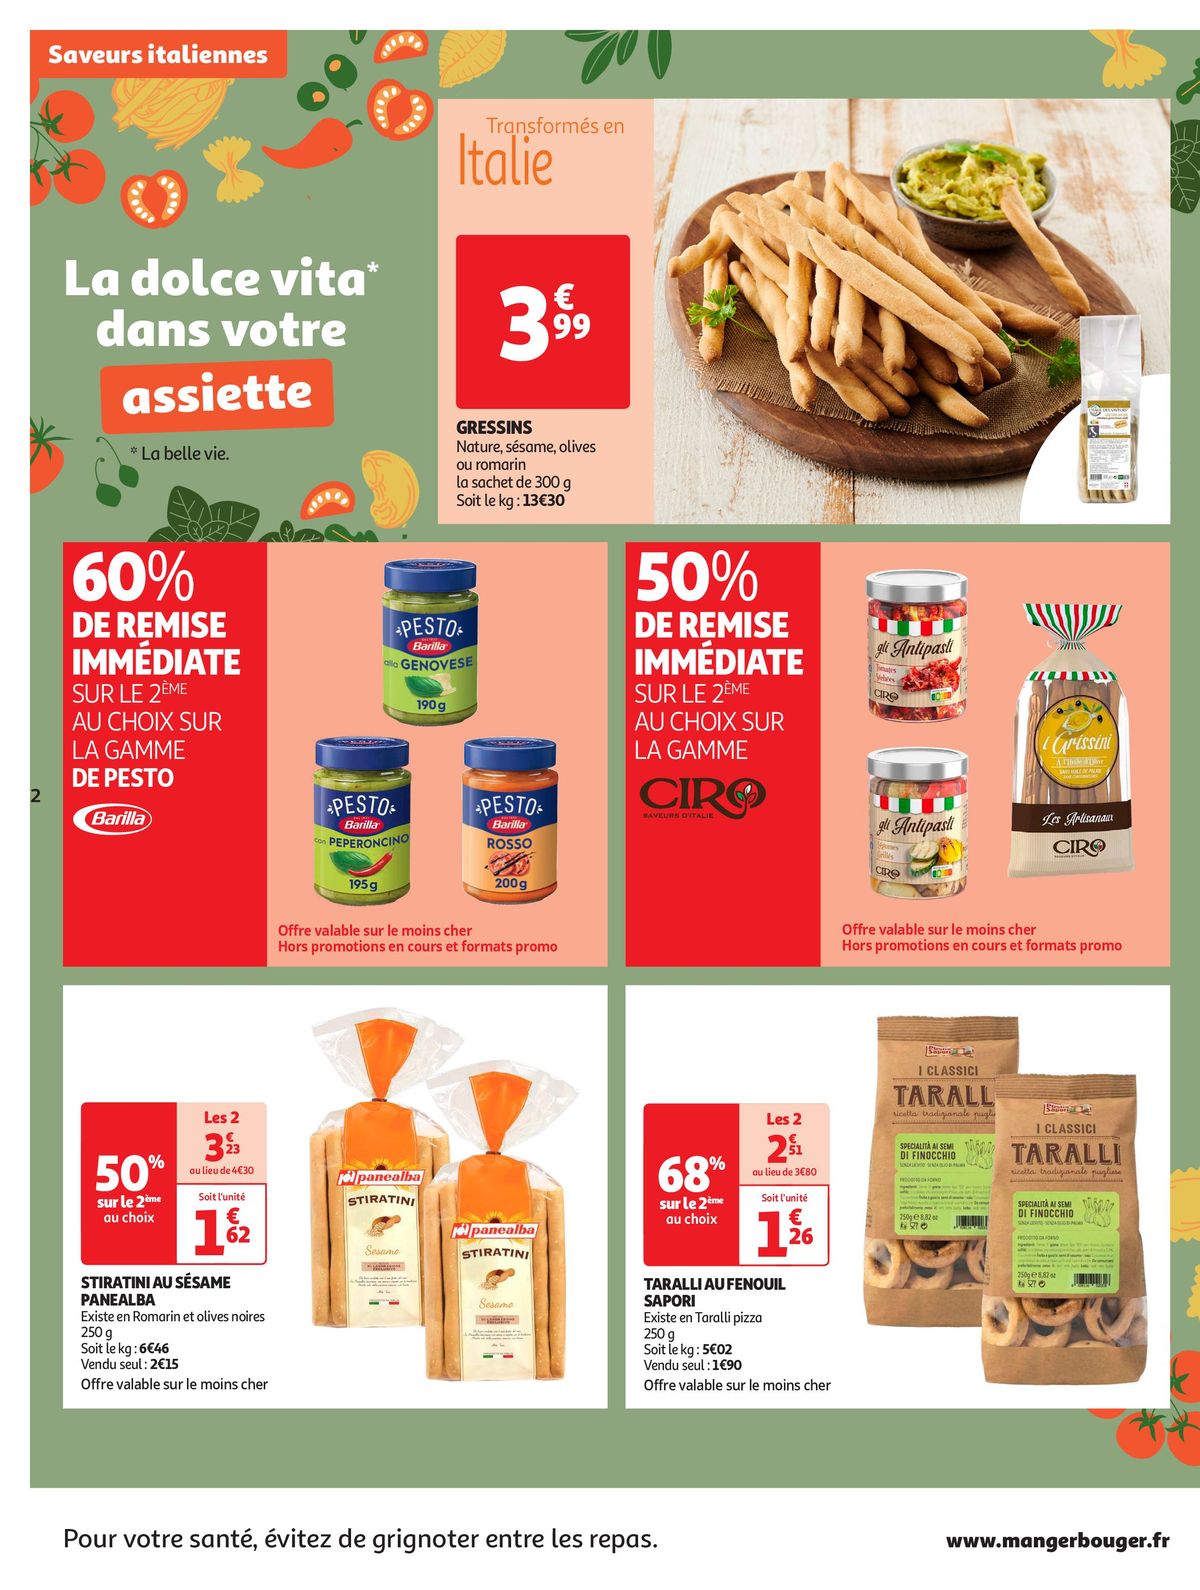 Catalogue La dolce vita dans votre assiette, page 00002